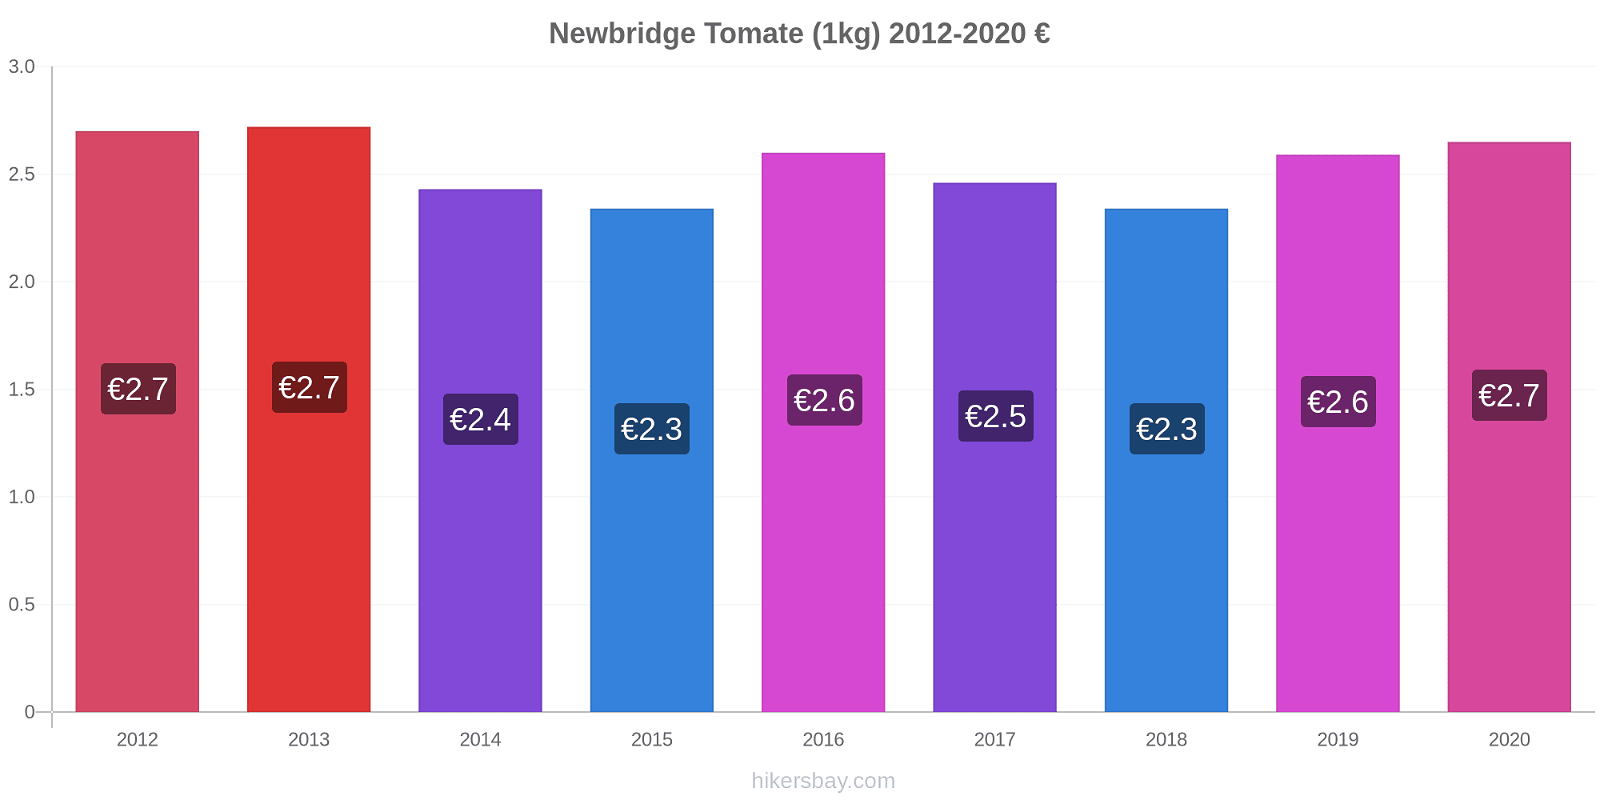 Newbridge variação de preço Tomate (1kg) hikersbay.com